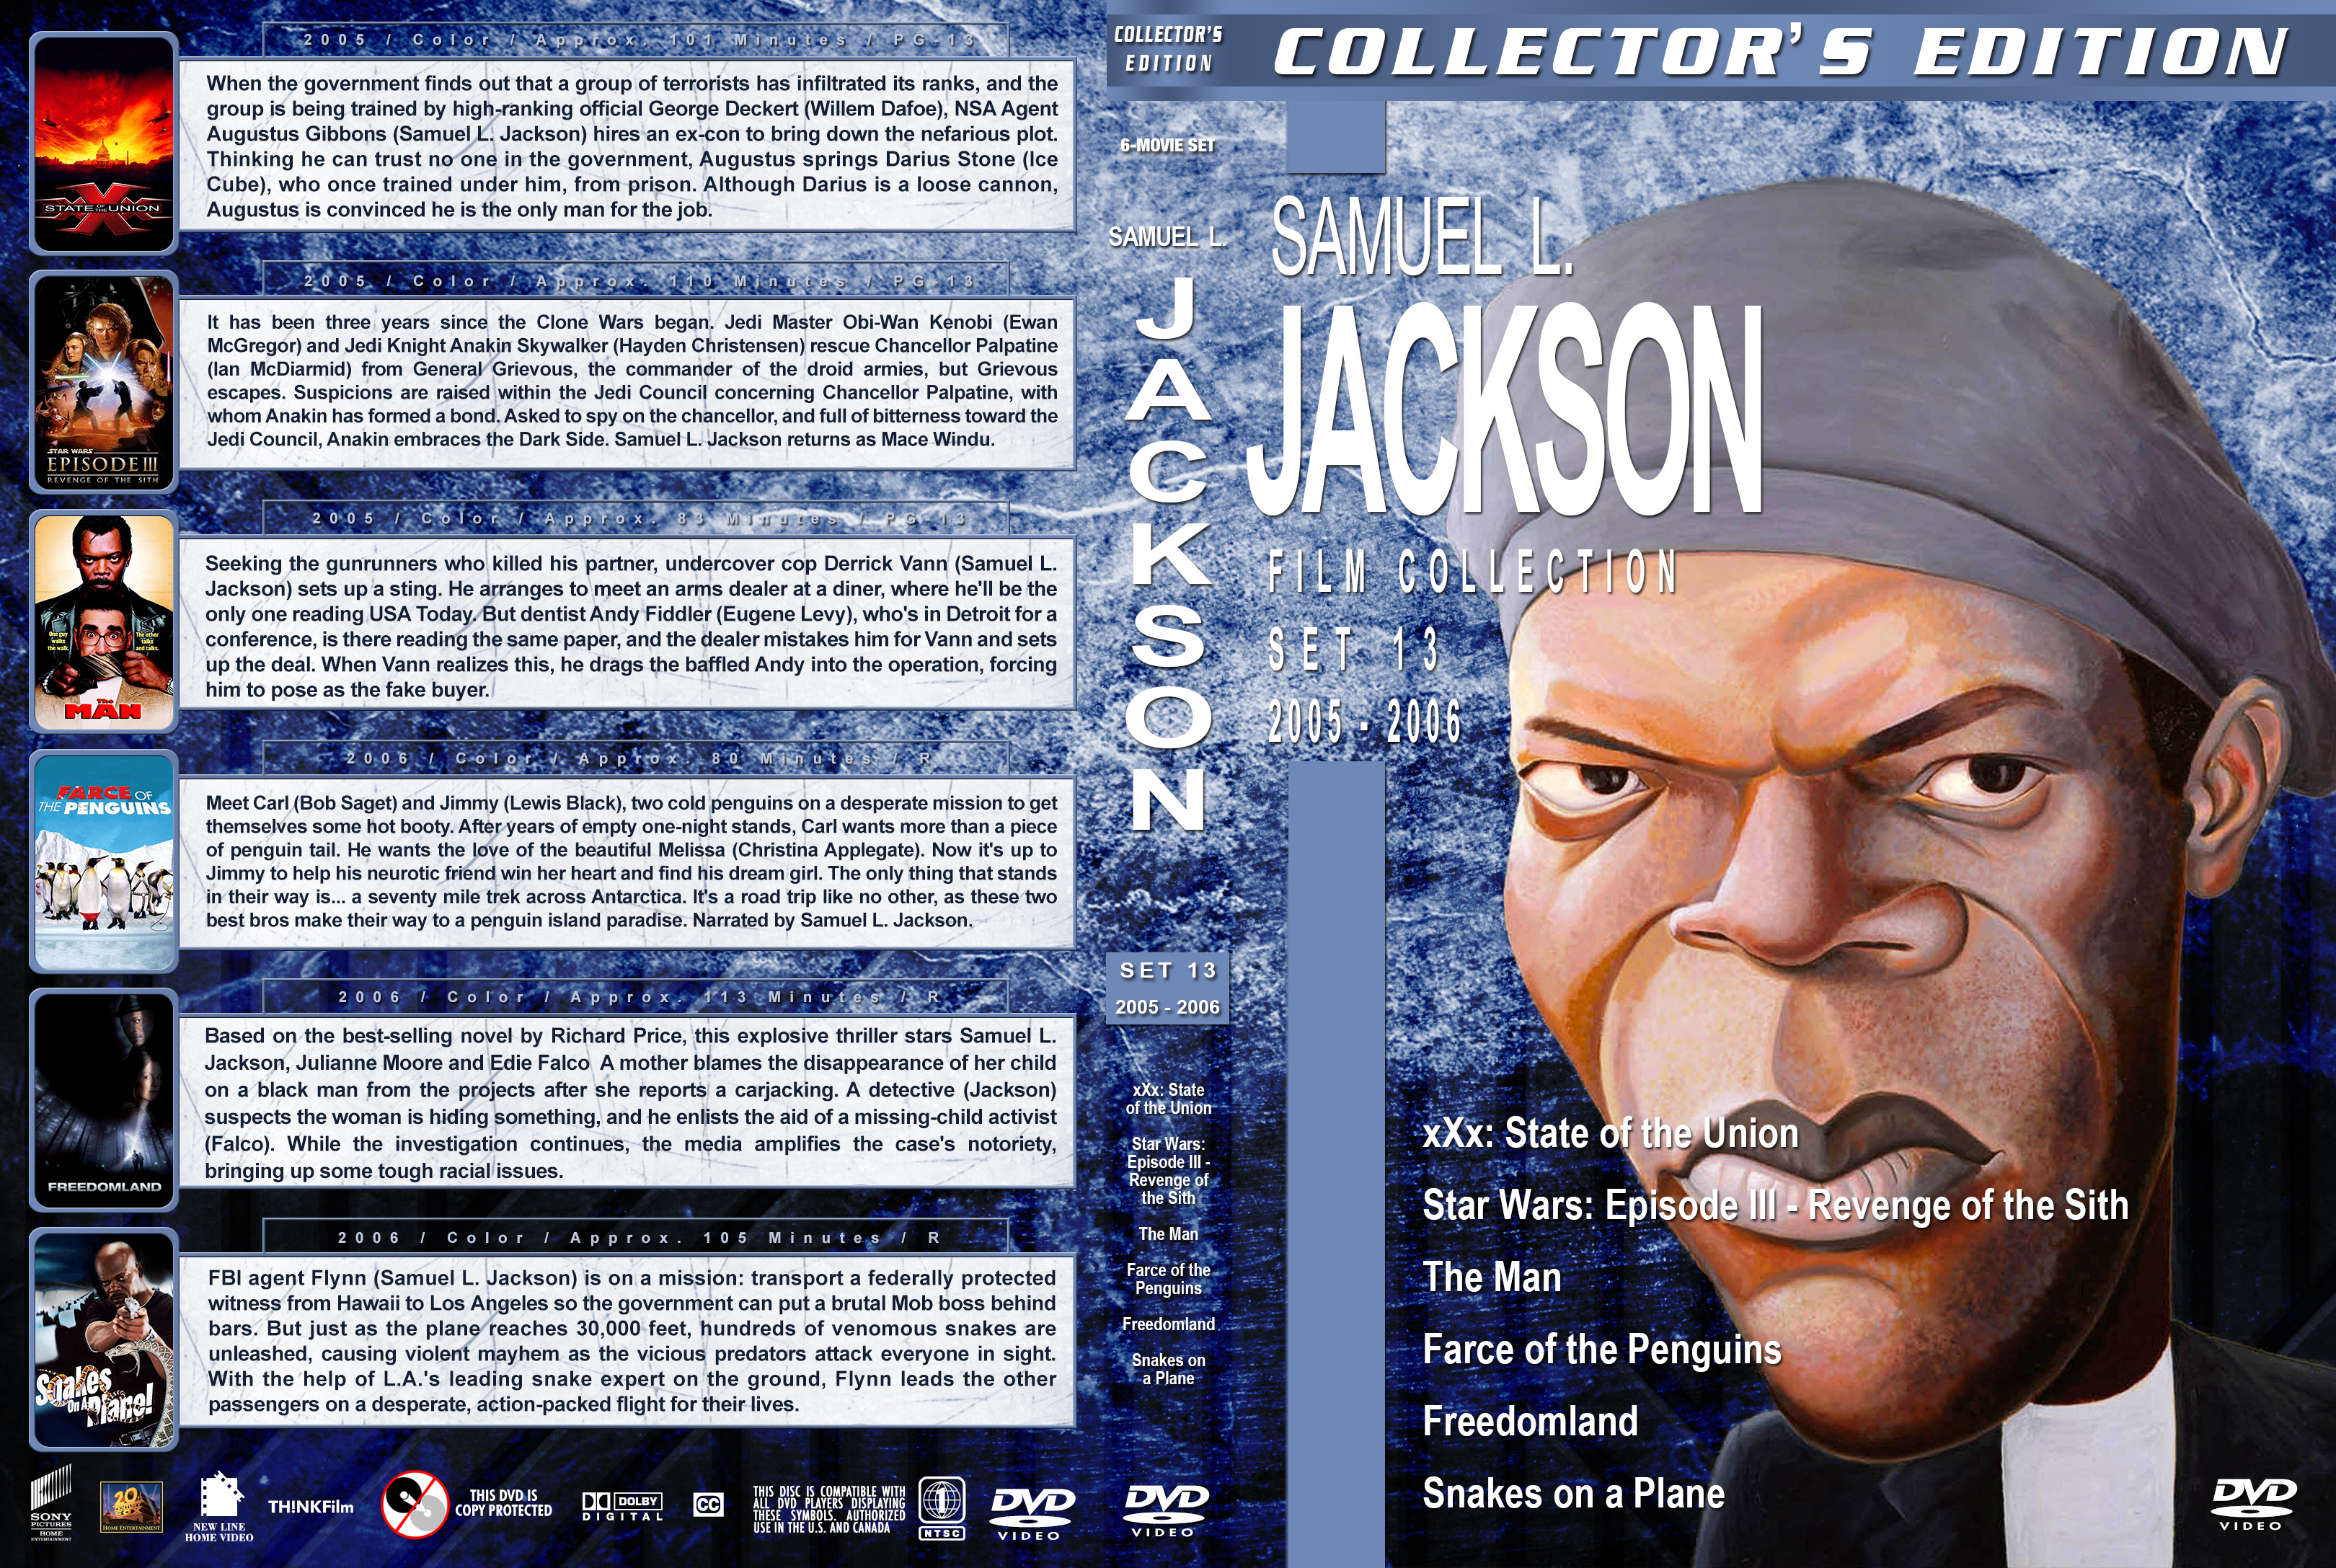 Samuel L Jackson Film Collection Set 13 2005 2006 Cover